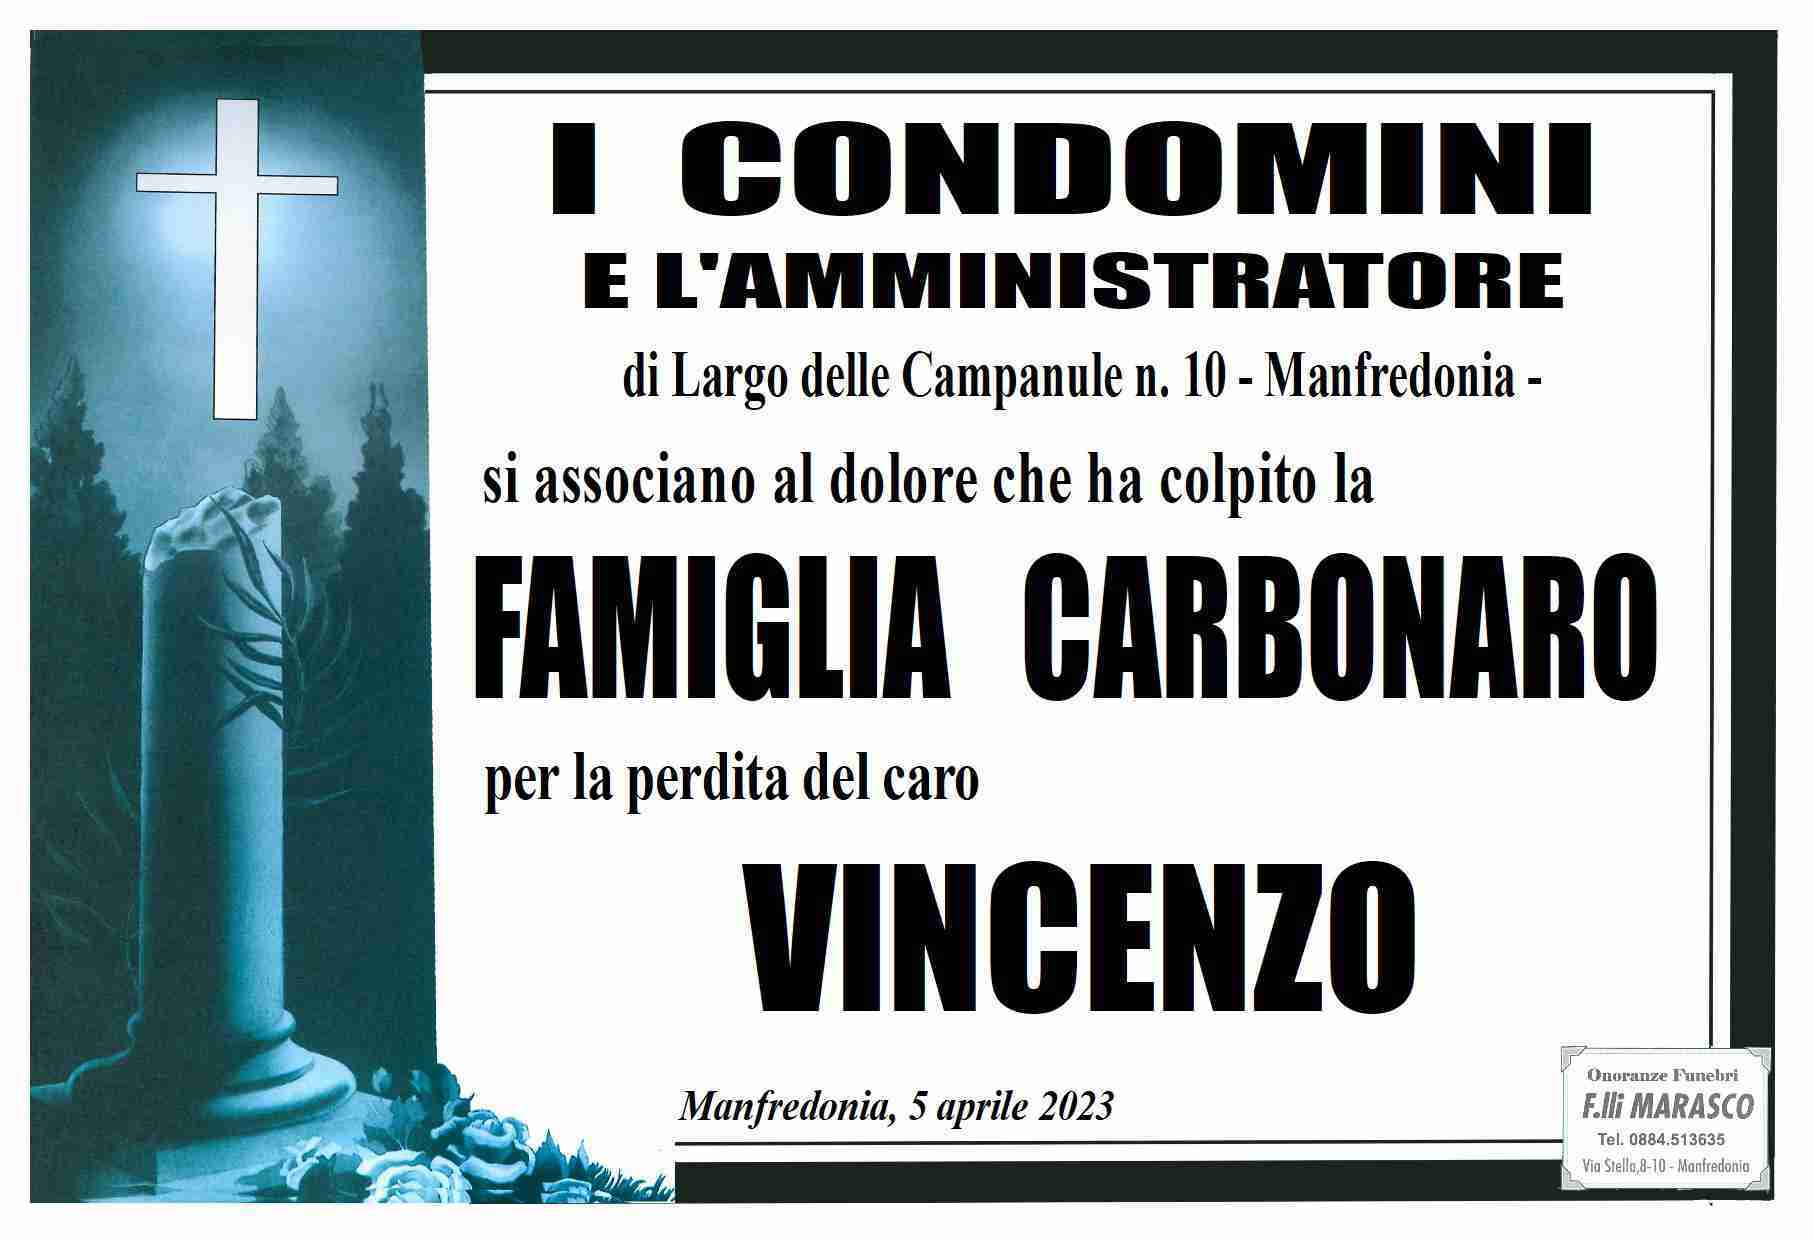 Vincenzo Carbonaro